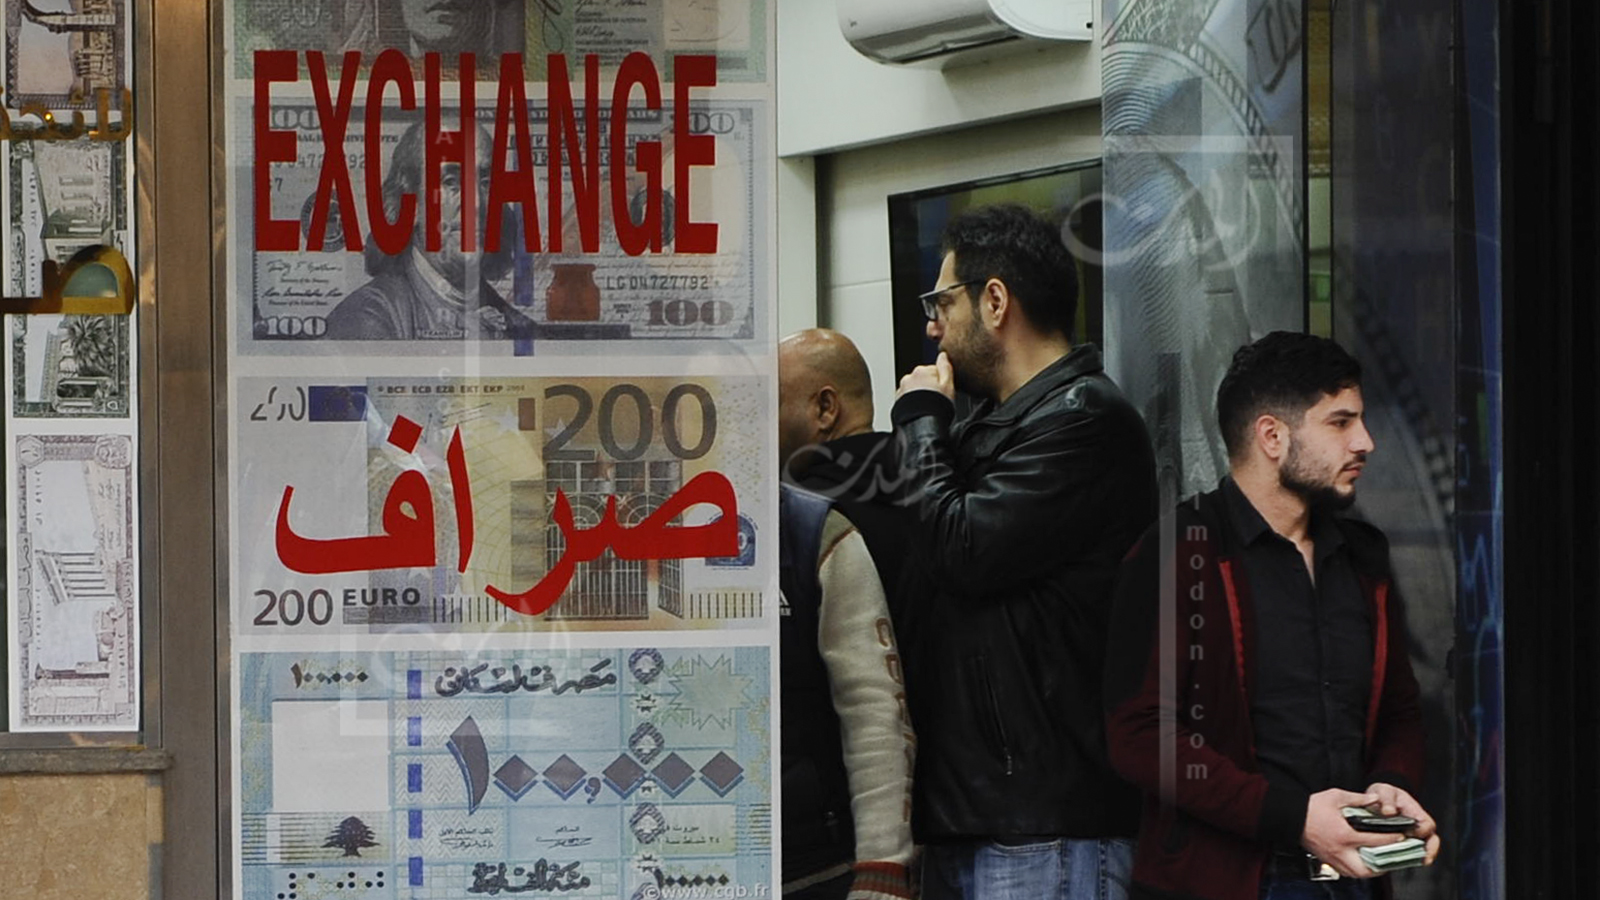 اللبنانيون وصدمة المئة ألف للدولار: كوميديا سوداء ورعب